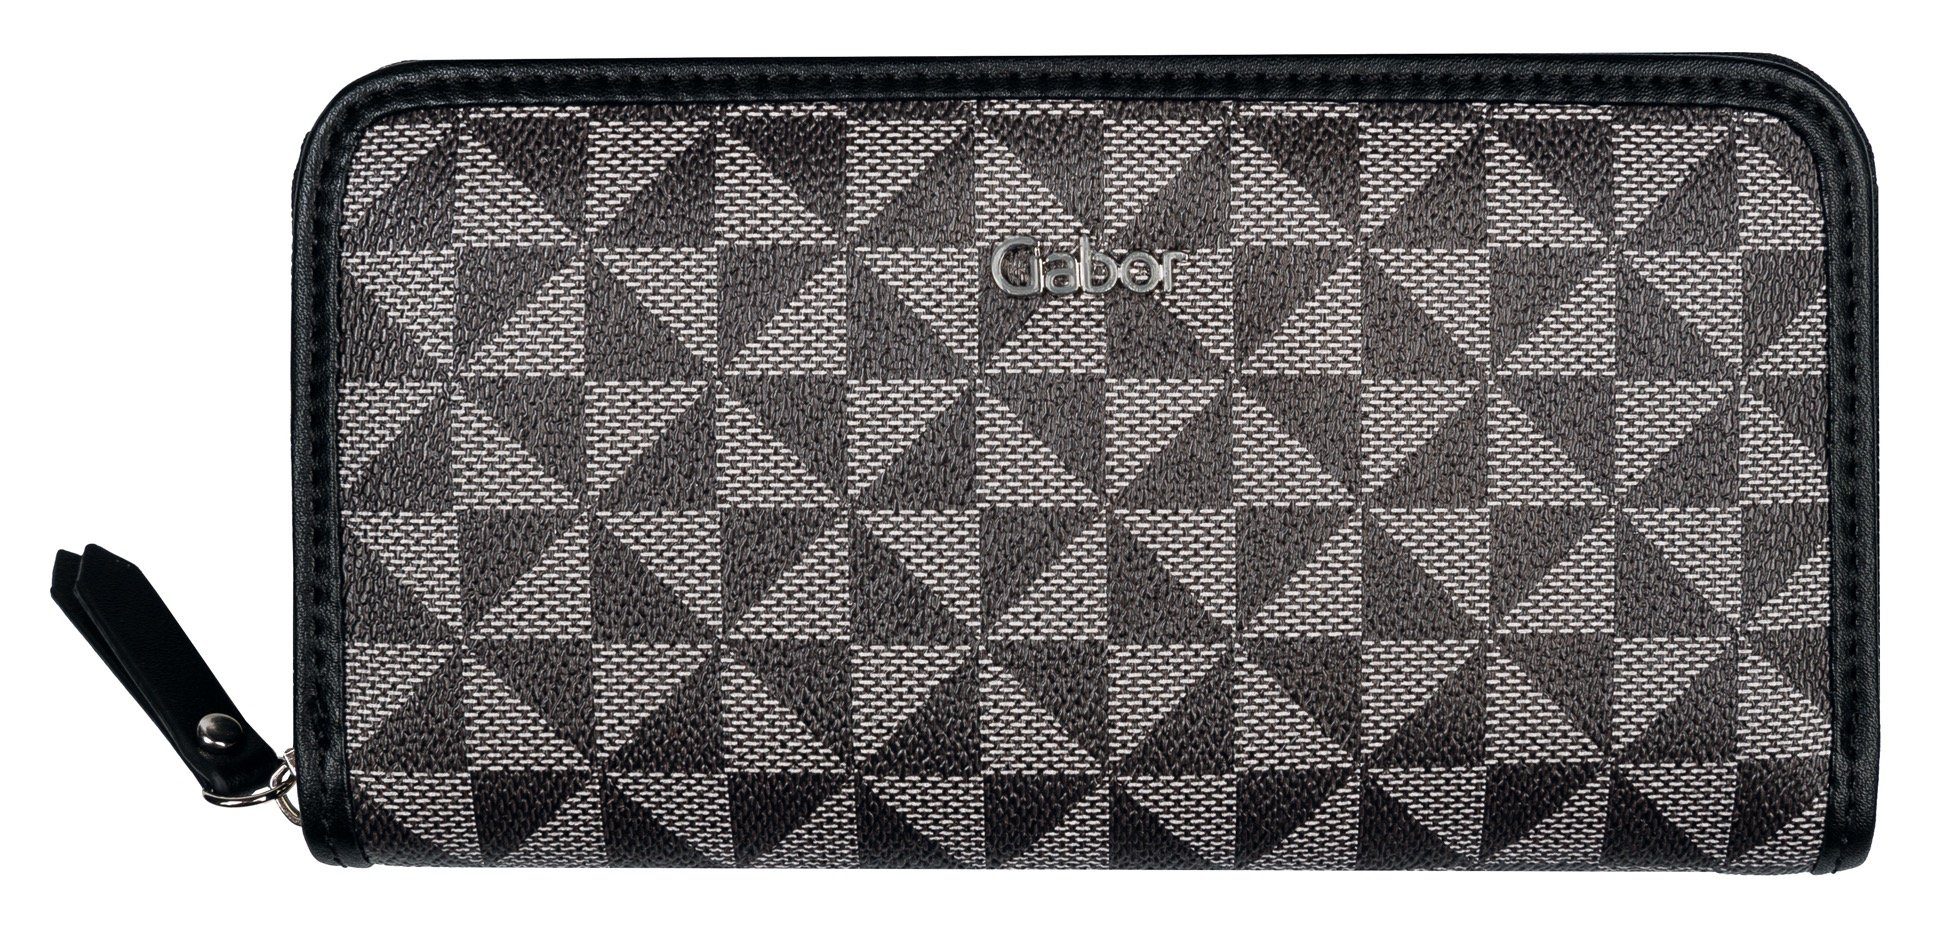 Gabor Geldbörse BARINA Long zip wallet XL, Hauptfach mit Reißverschluss schwarz | Geldbörsen